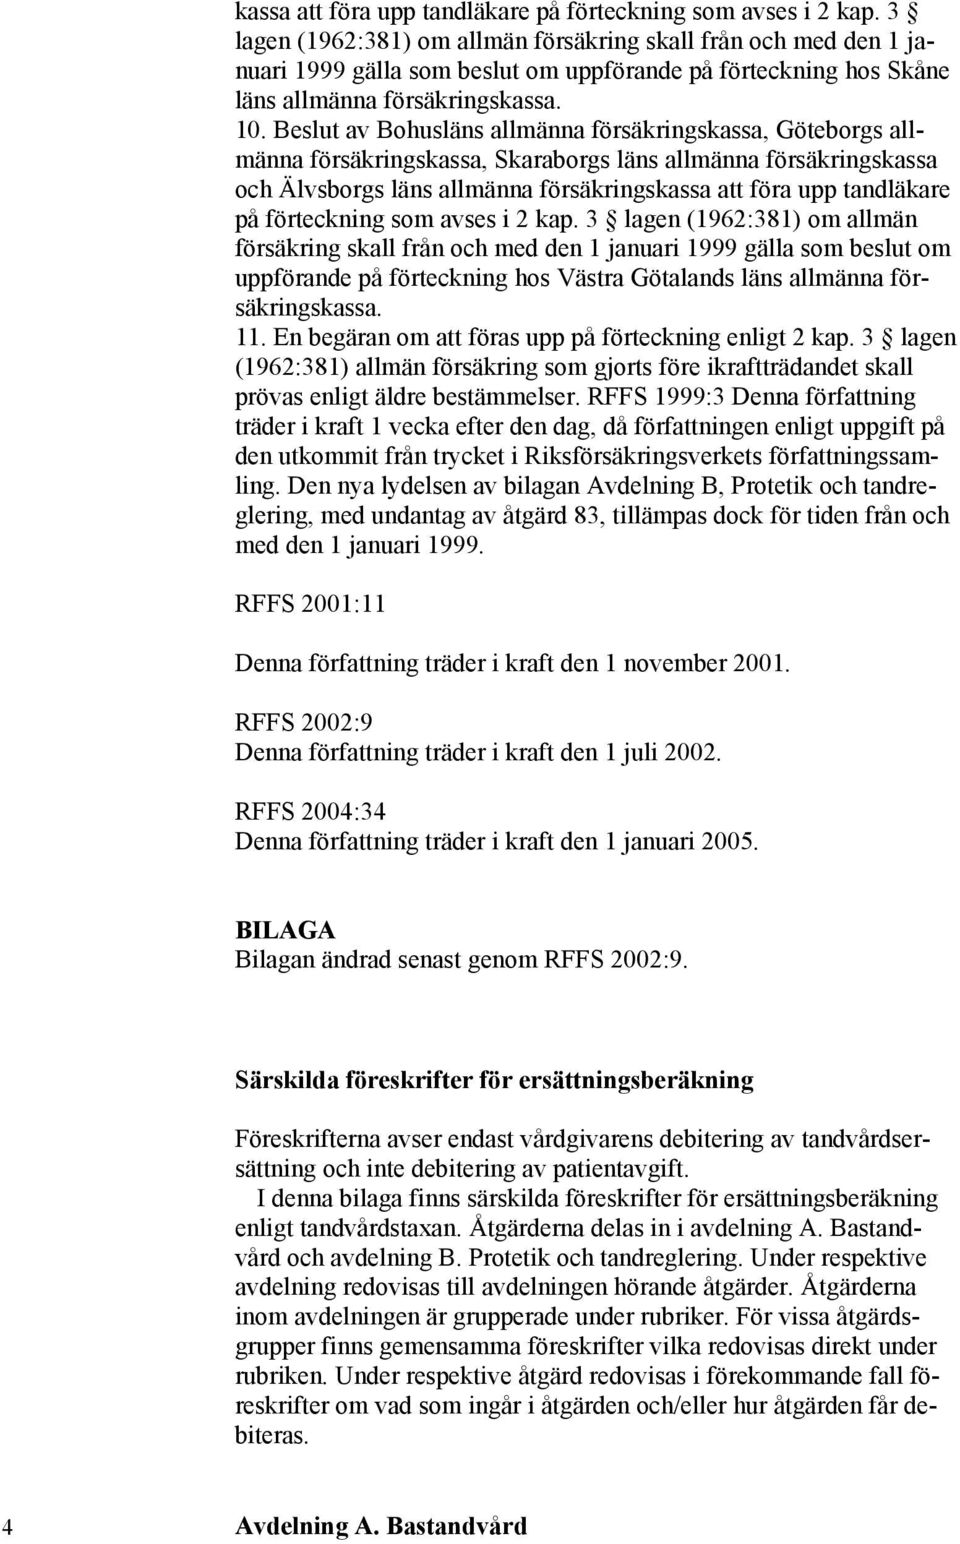 Beslut av Bohusläns allmänna försäkringskassa, Göteborgs allmänna försäkringskassa, Skaraborgs läns allmänna försäkringskassa och Älvsborgs läns allmänna försäkrings 3 lagen (1962:381) om allmän